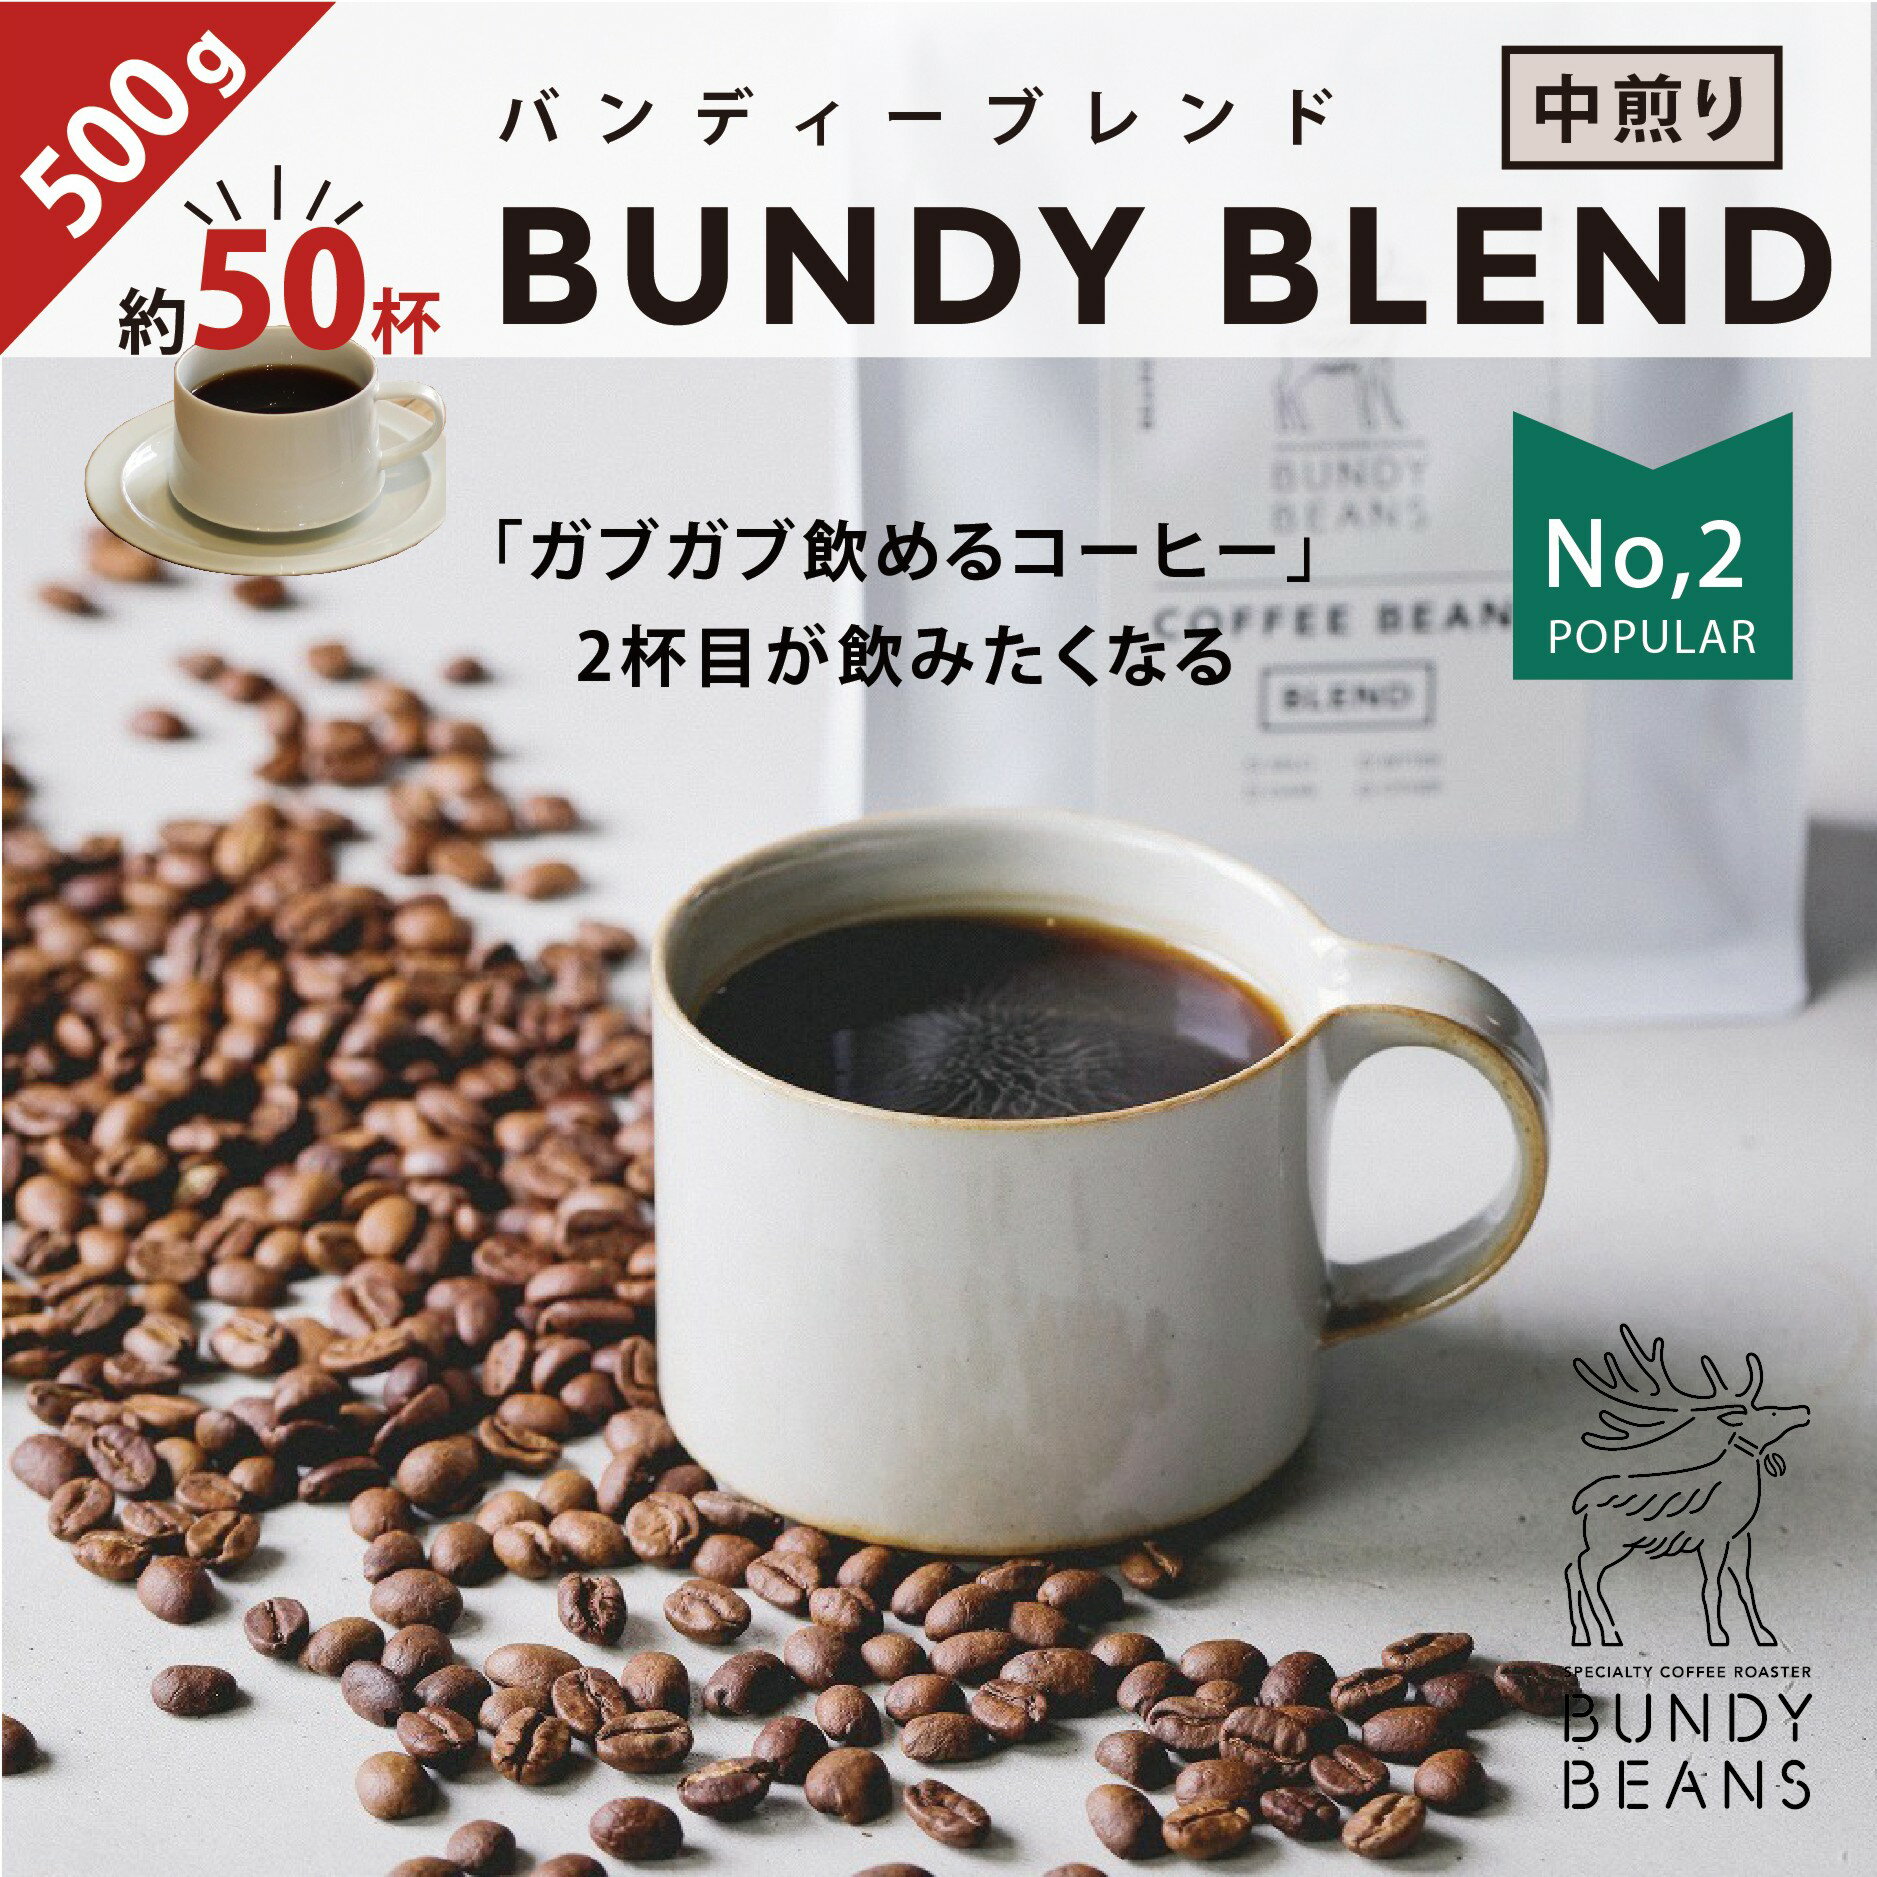 500gBUNDY BLEND/バンディブレンド 中煎り コーヒーギフト スペシャルティコーヒー コーヒー ギフト 珈琲 カフェオレ gift コーヒー豆 | 珈琲豆 豆 プレゼント ブレンドコーヒー こーひー 美味しいコーヒー おうちカフェ コーヒー粉